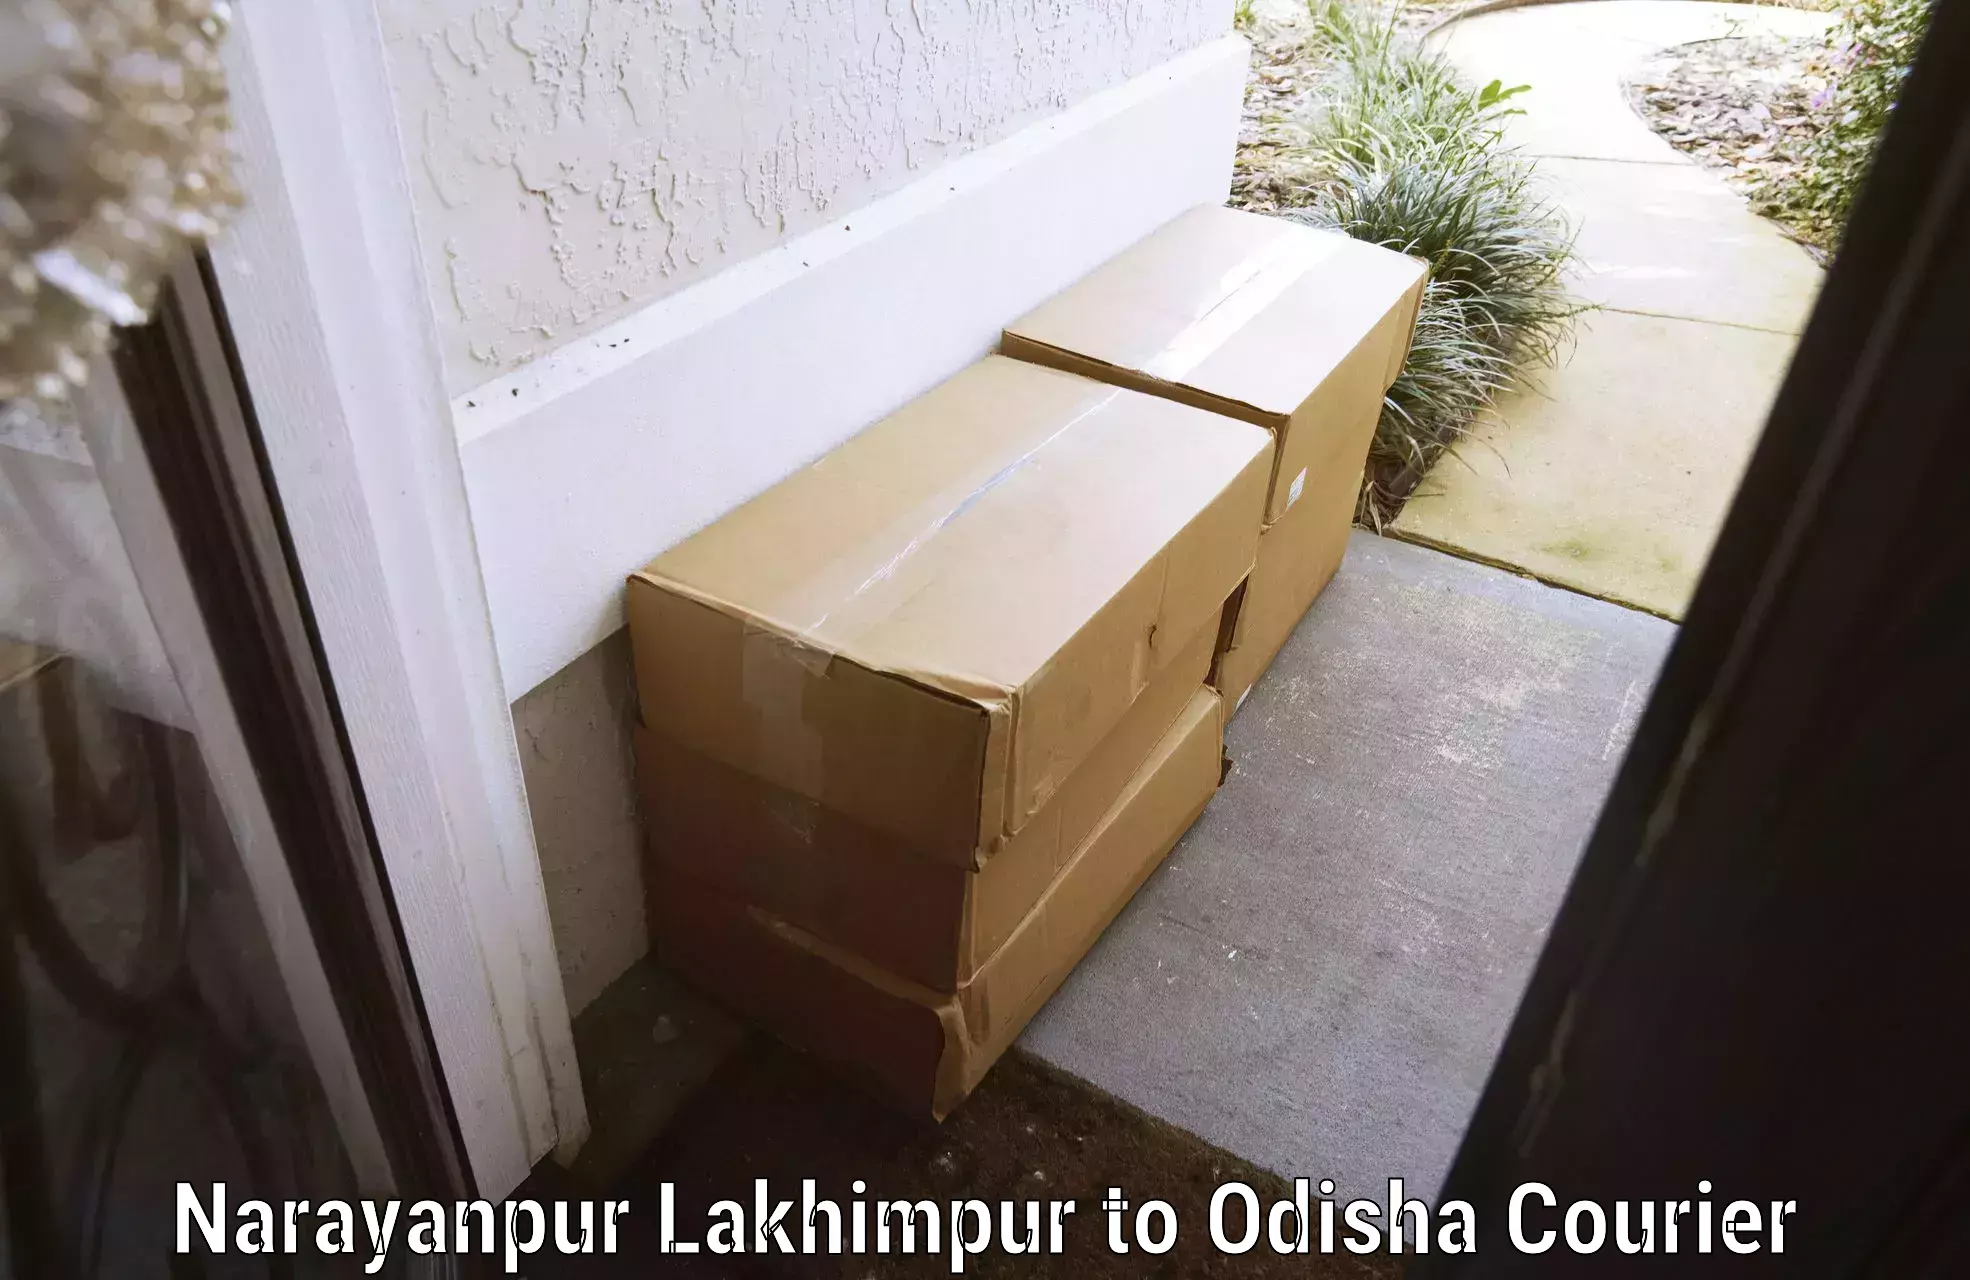 Luggage transfer service Narayanpur Lakhimpur to Adaspur